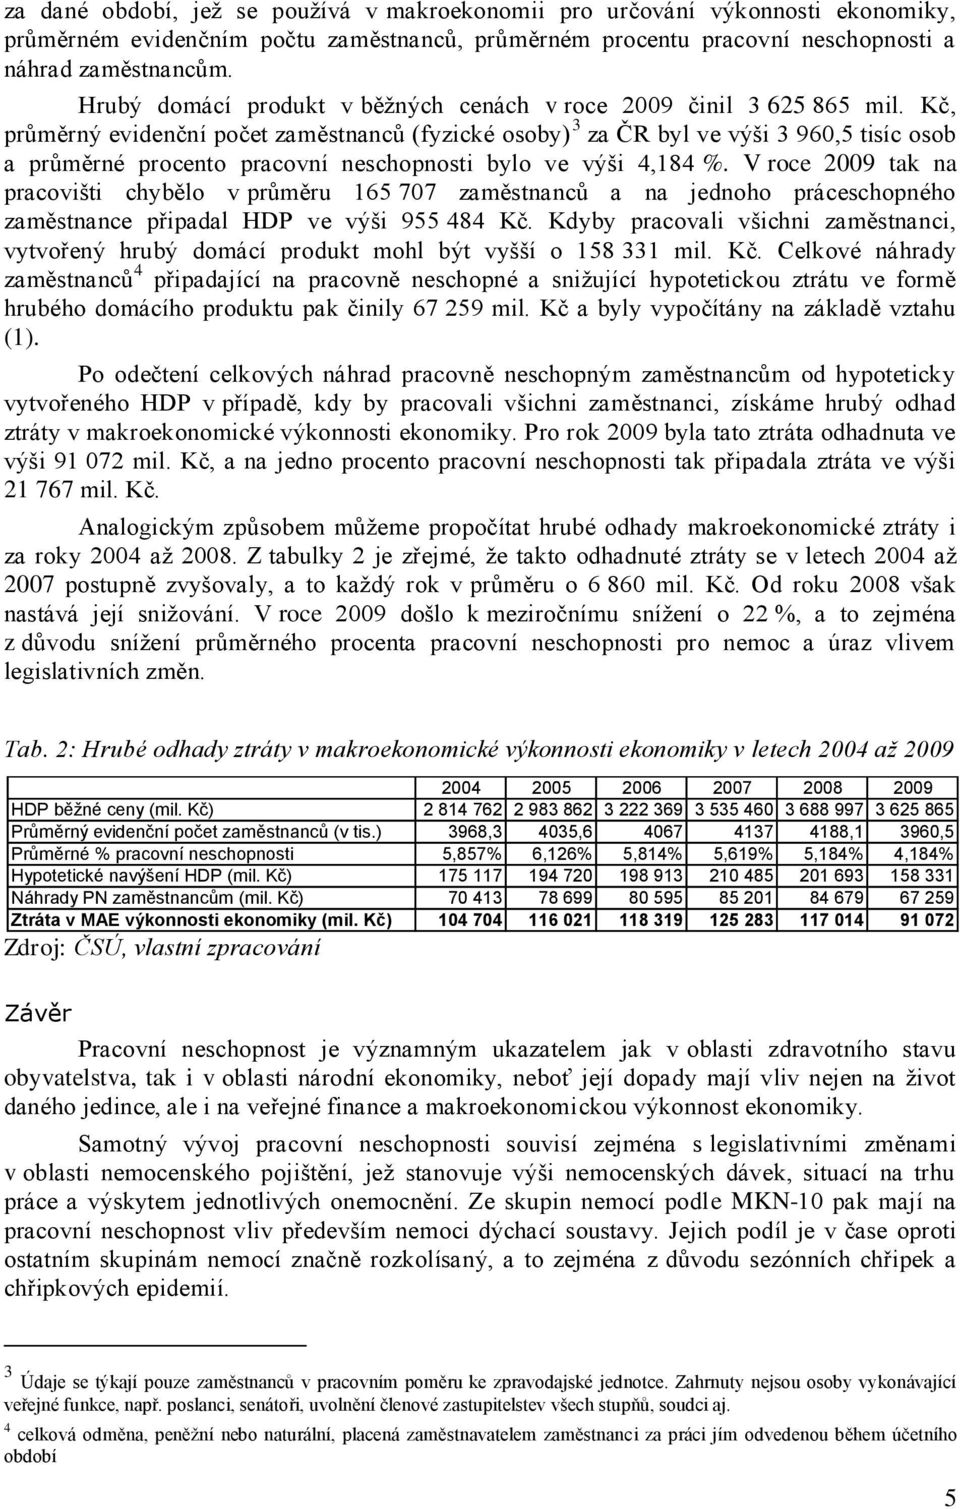 Kč, průměrný evidenční počet zaměstnanců (fyzické osoby) 3 za ČR byl ve výši 3 960,5 tisíc osob a průměrné procento pracovní neschopnosti bylo ve výši 4,184 %.